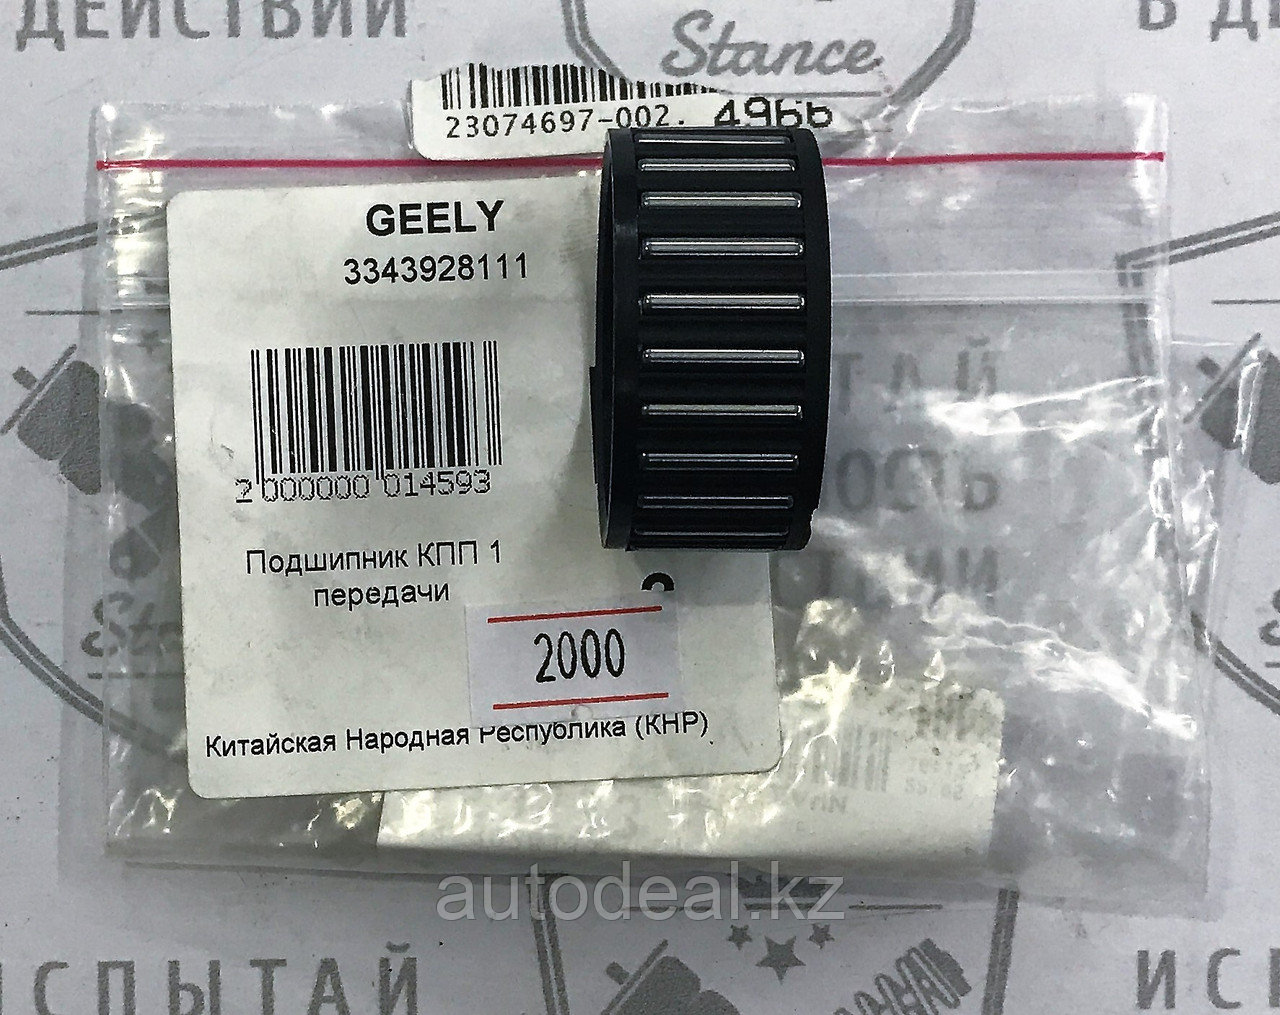 Подшипник игольчатый шестерни 1 передачи Geely GC6 / Needle roller bearing 1 shift